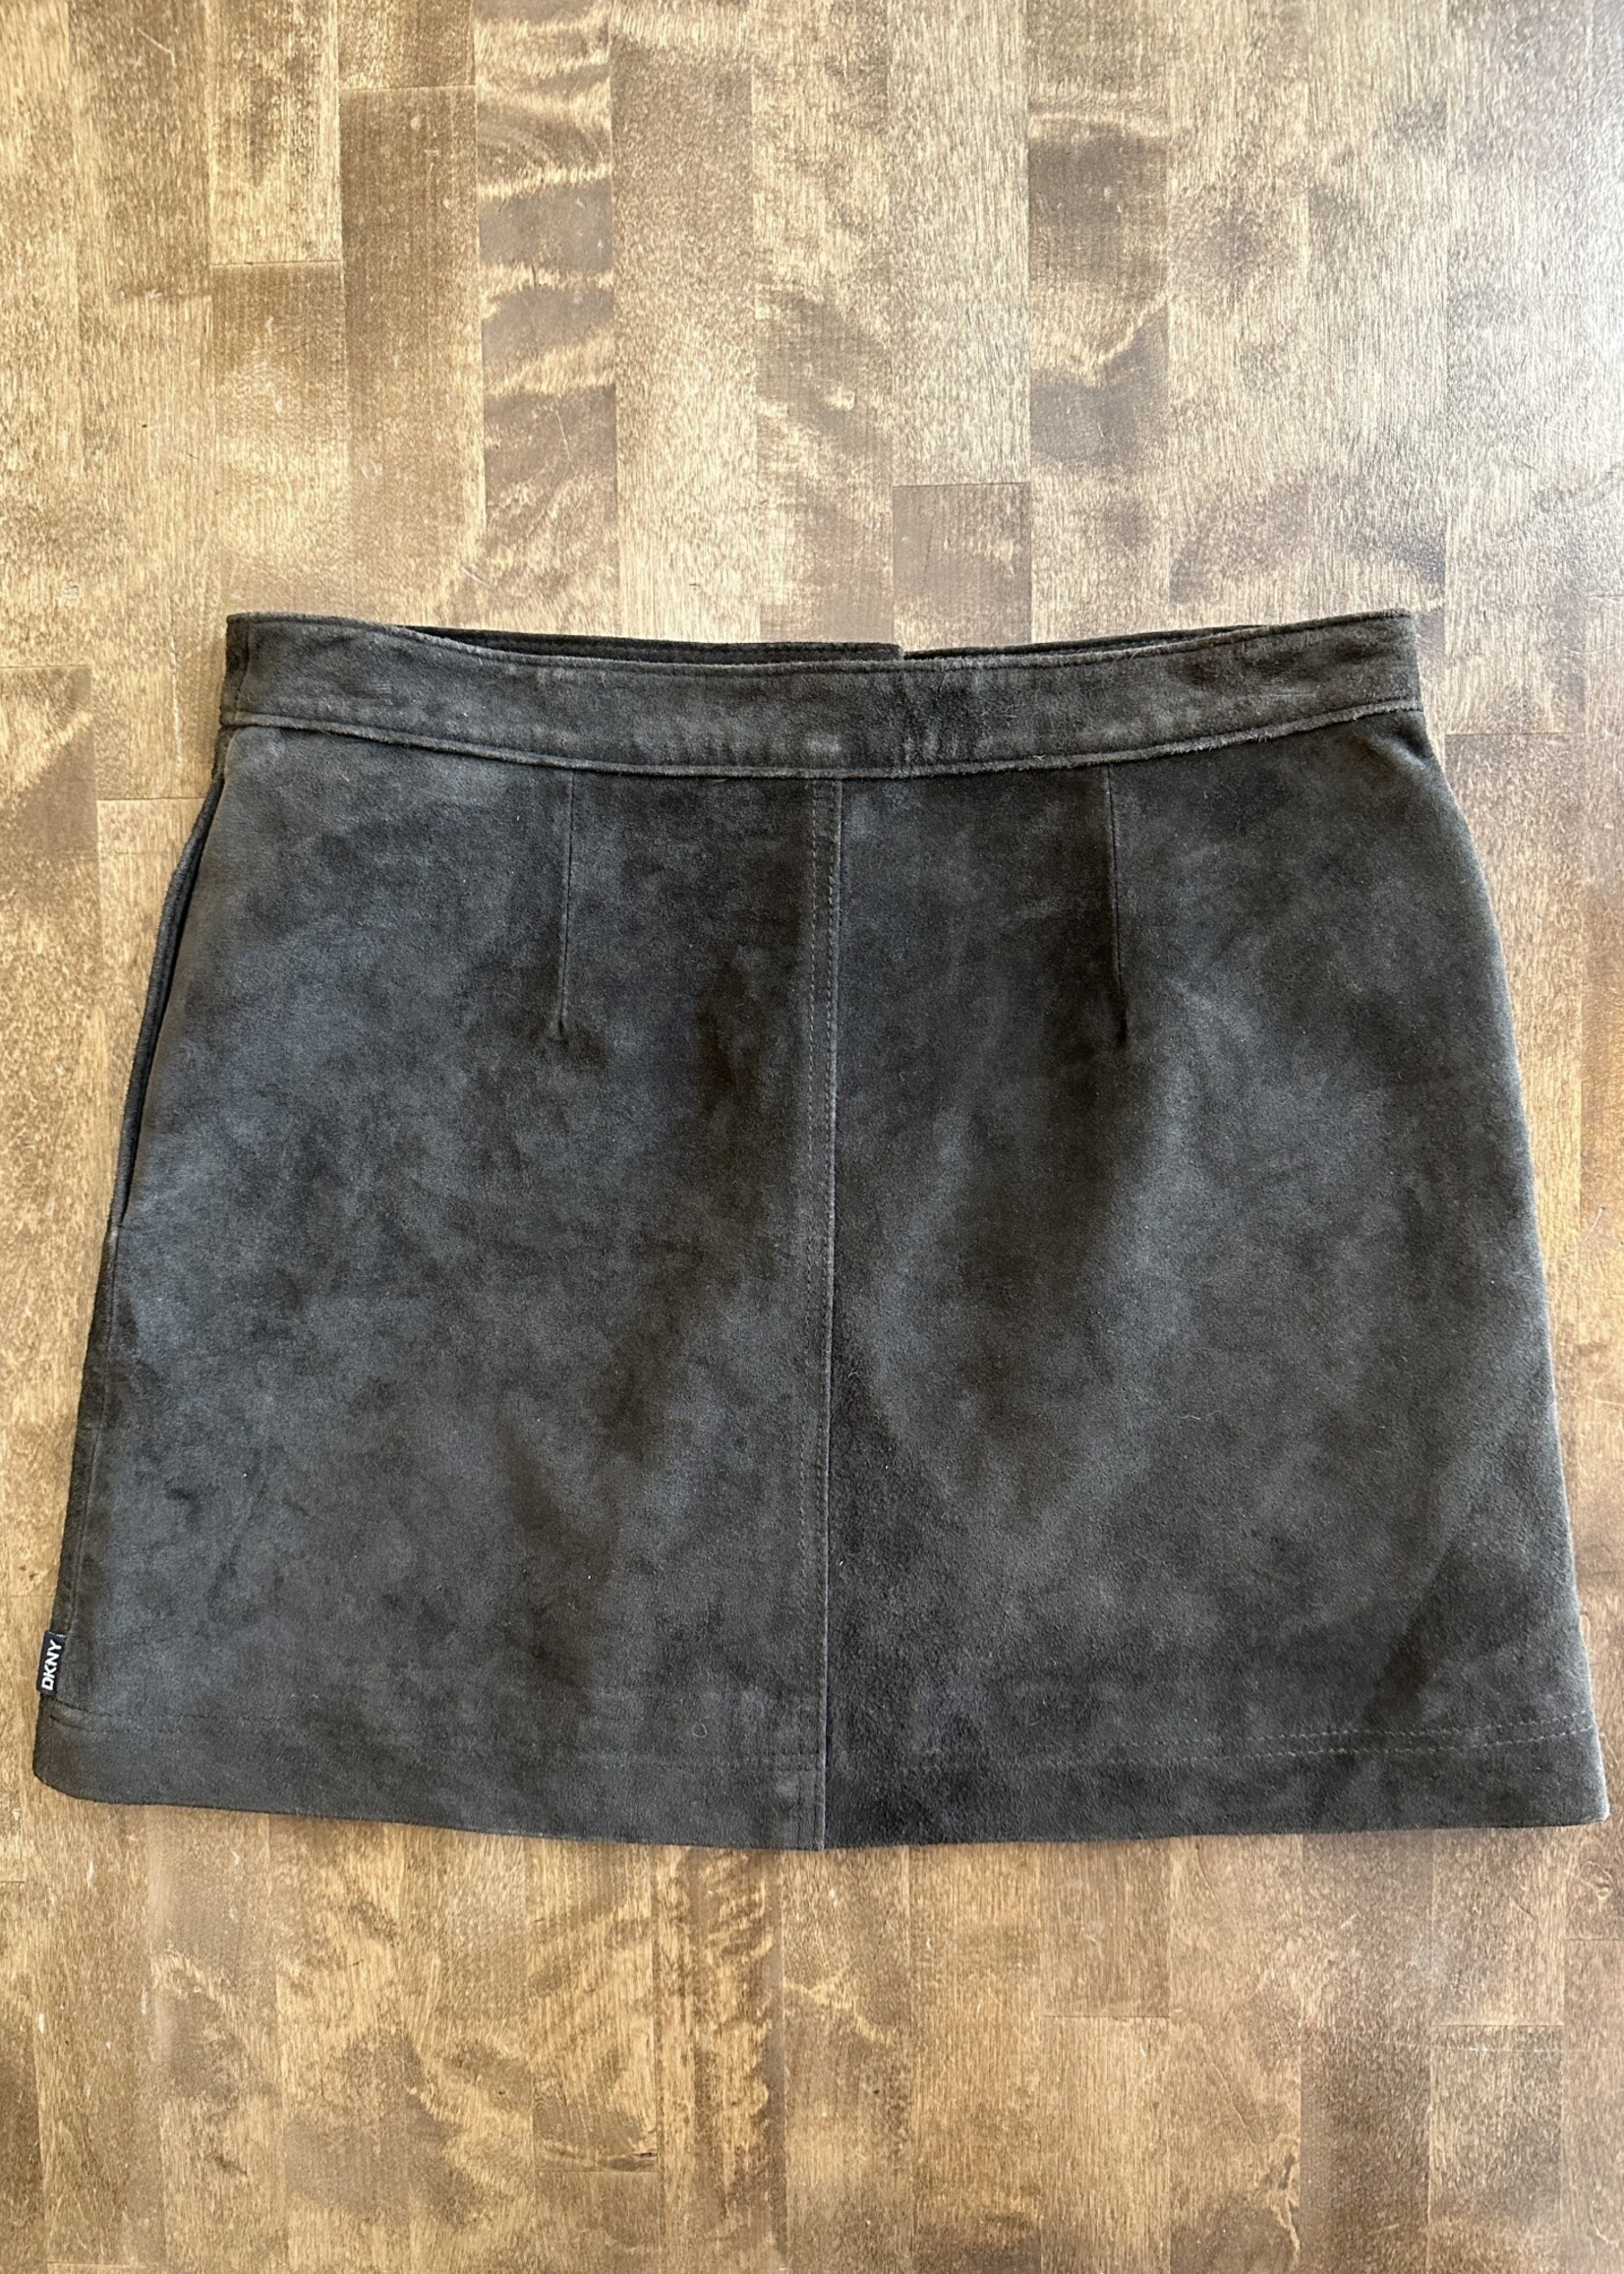 DKNY Dark Brown Suede Skirt 26 XS